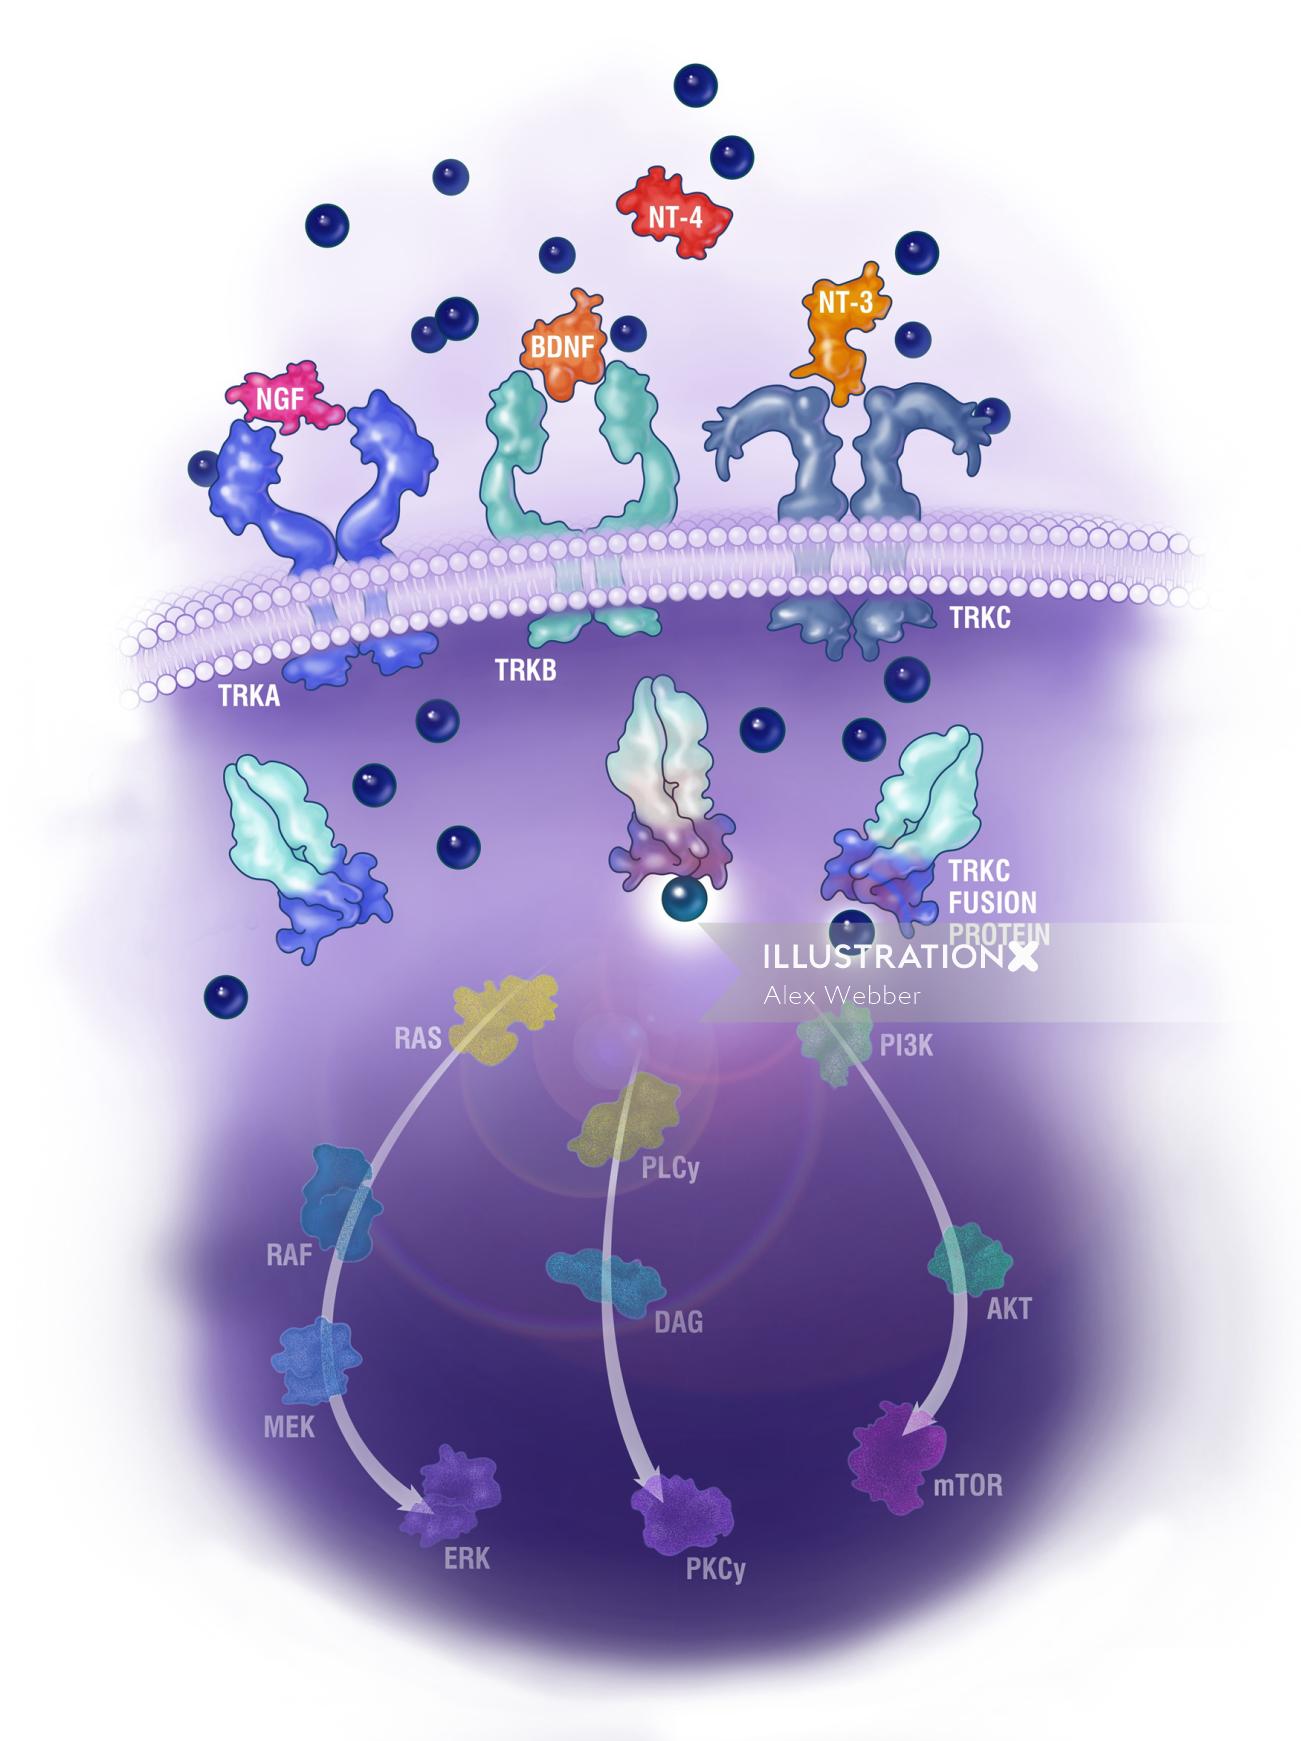 Mecanismo de ação mostra a ilustração da proteína de fusão TRKC por Alex Webber